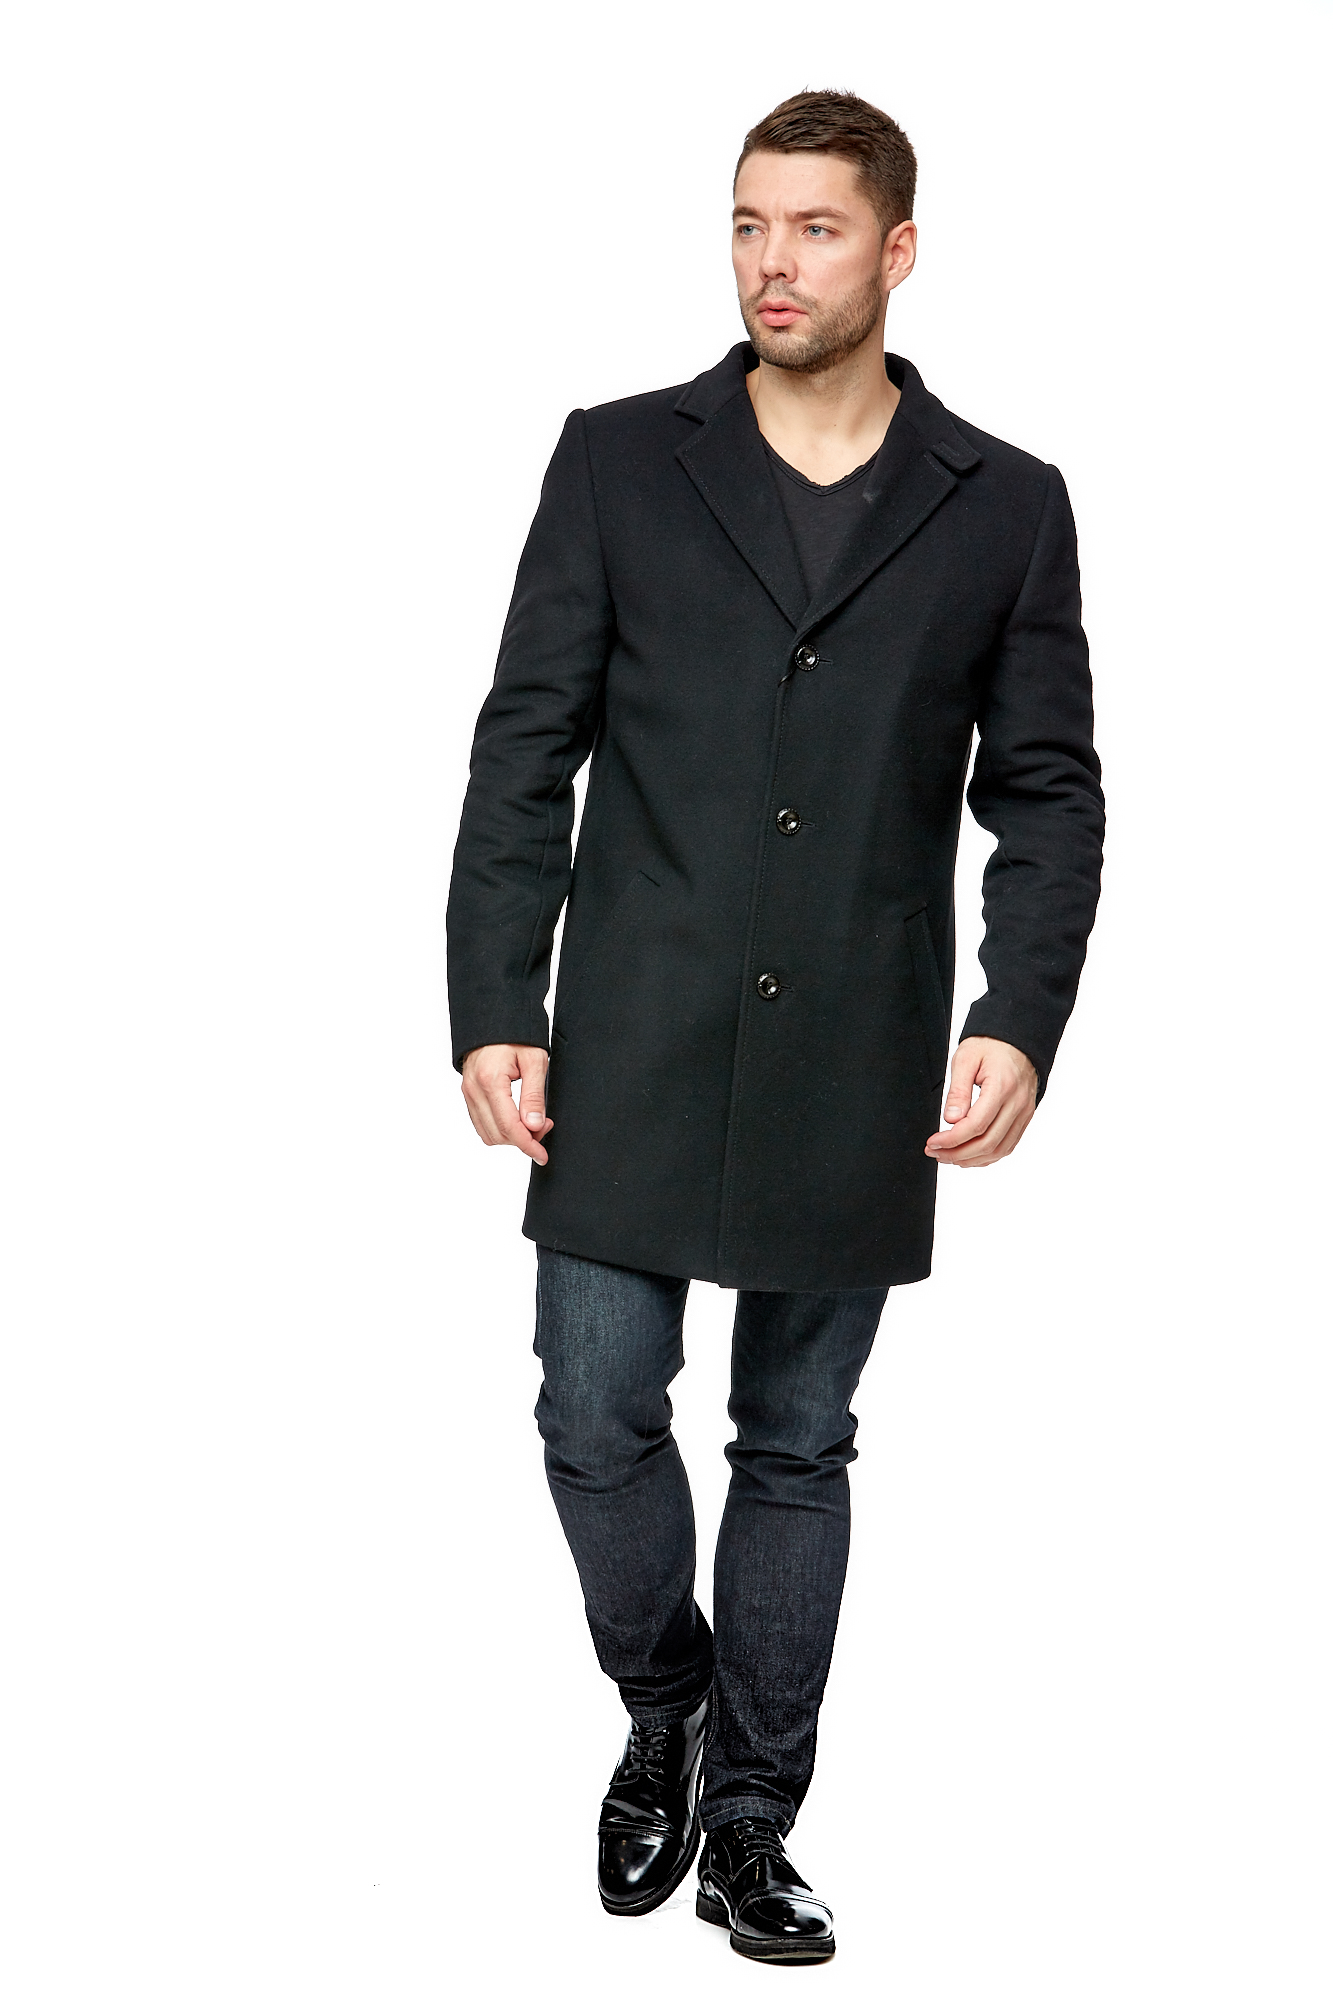 Мужское пальто из текстиля с воротником 8002074-4